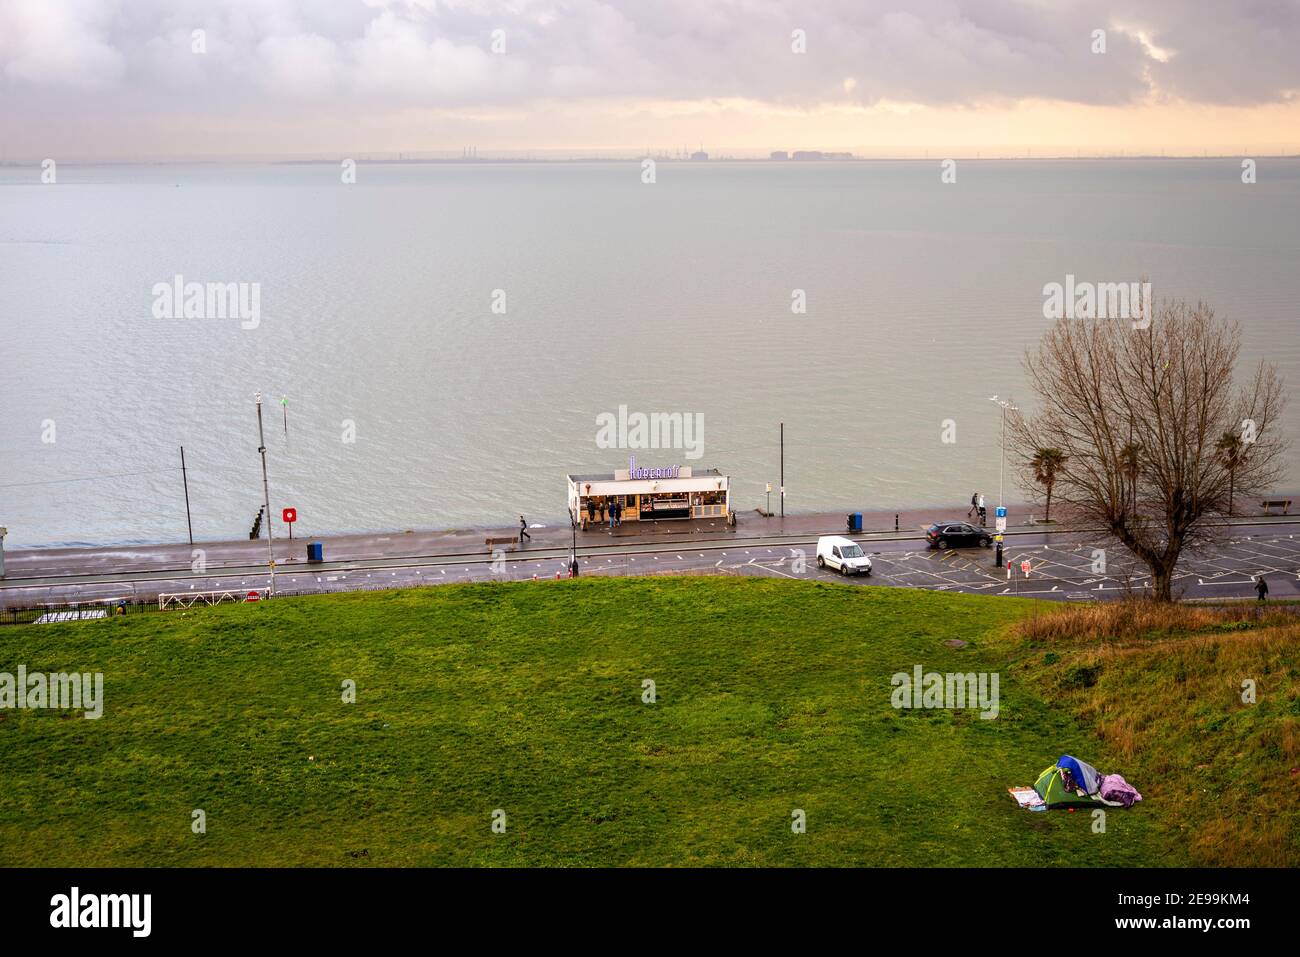 Blick von der Spitze der Cliff Gardens, Southend on Sea, Essex, Großbritannien, mit Blick auf die Themse Mündung. Zelt für Obdachlose. Roberto's Cafe Kiosk. Nass Stockfoto